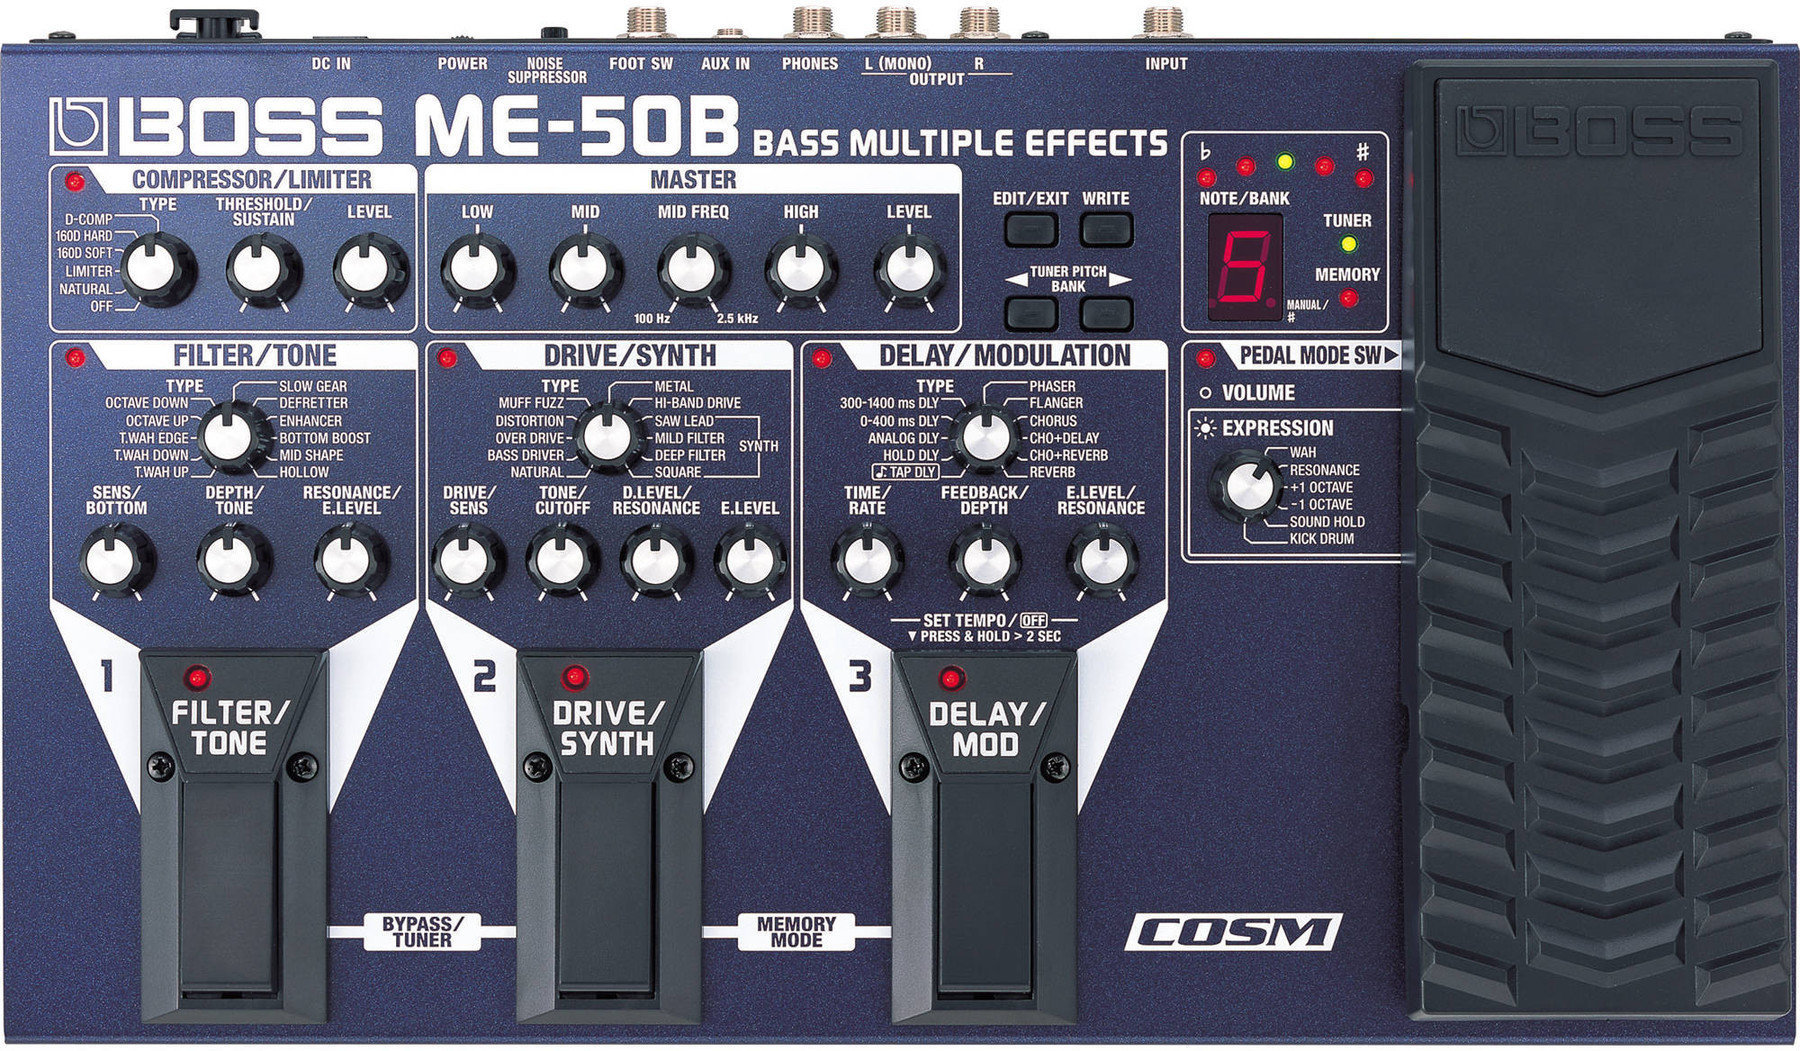 Bass Multieffekt Boss ME-50B Bass Multiple Effects